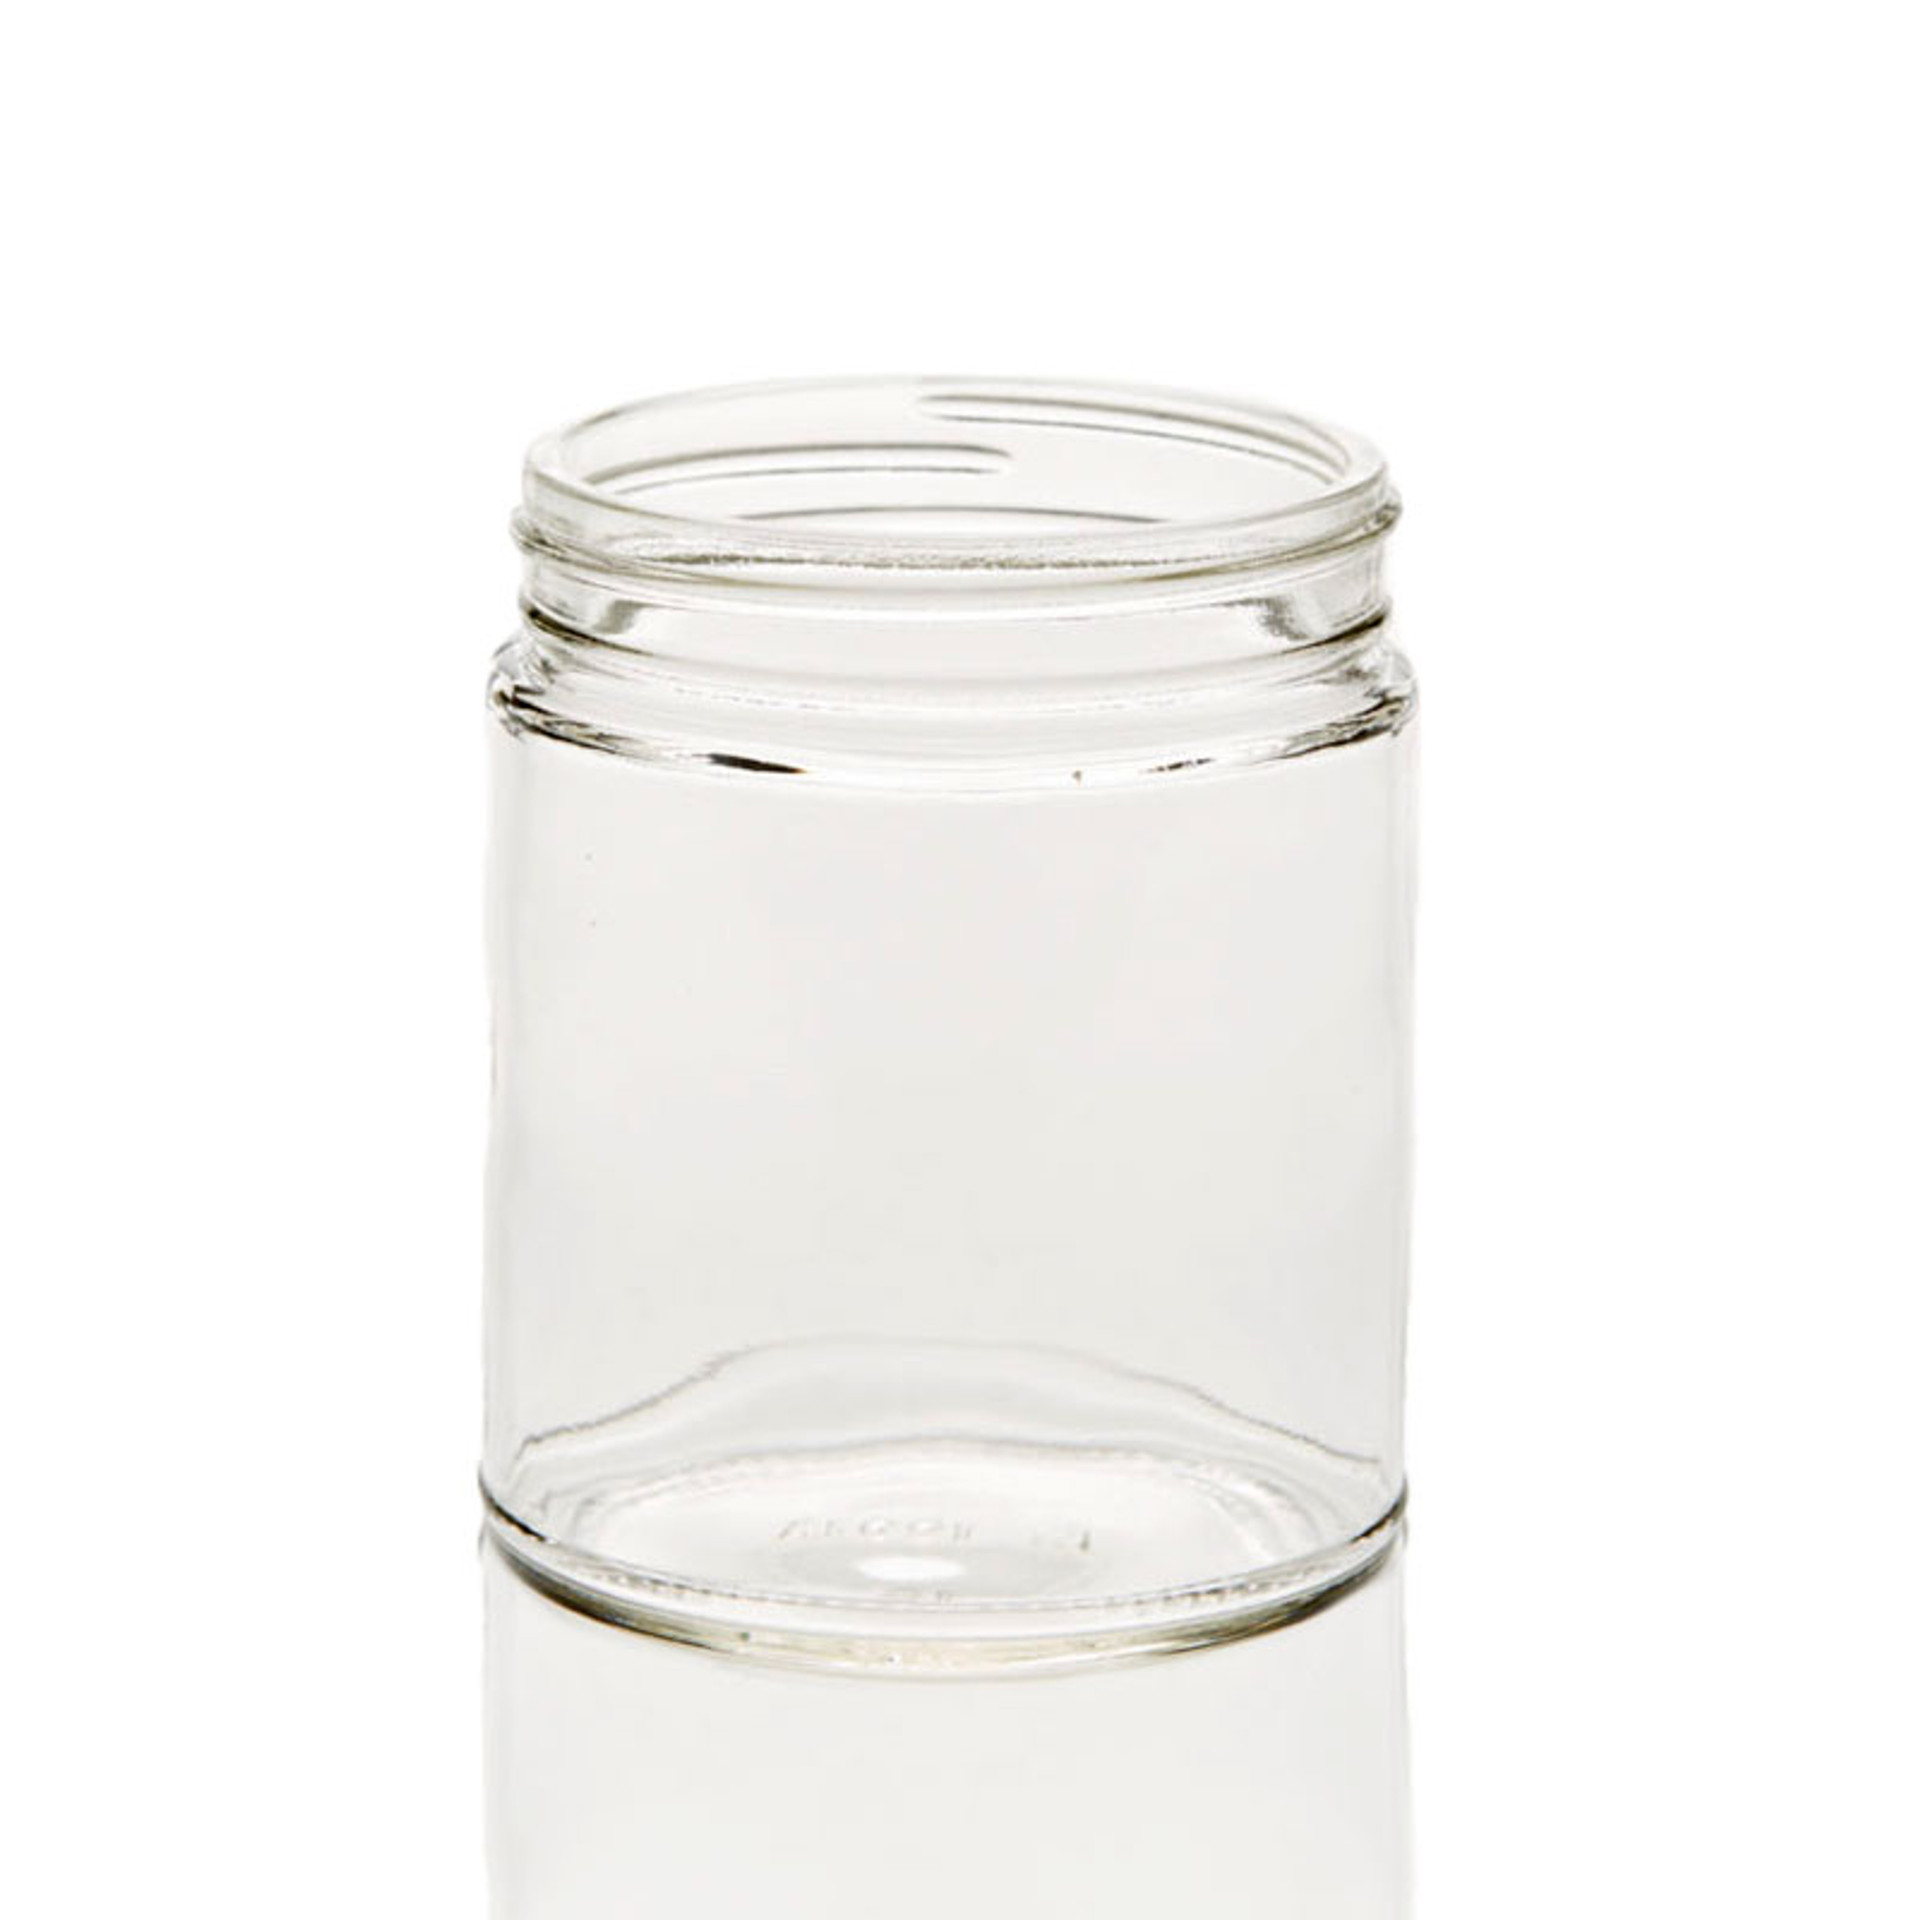 12 fl oz Glass Salsa Jar with Lid - 355ml